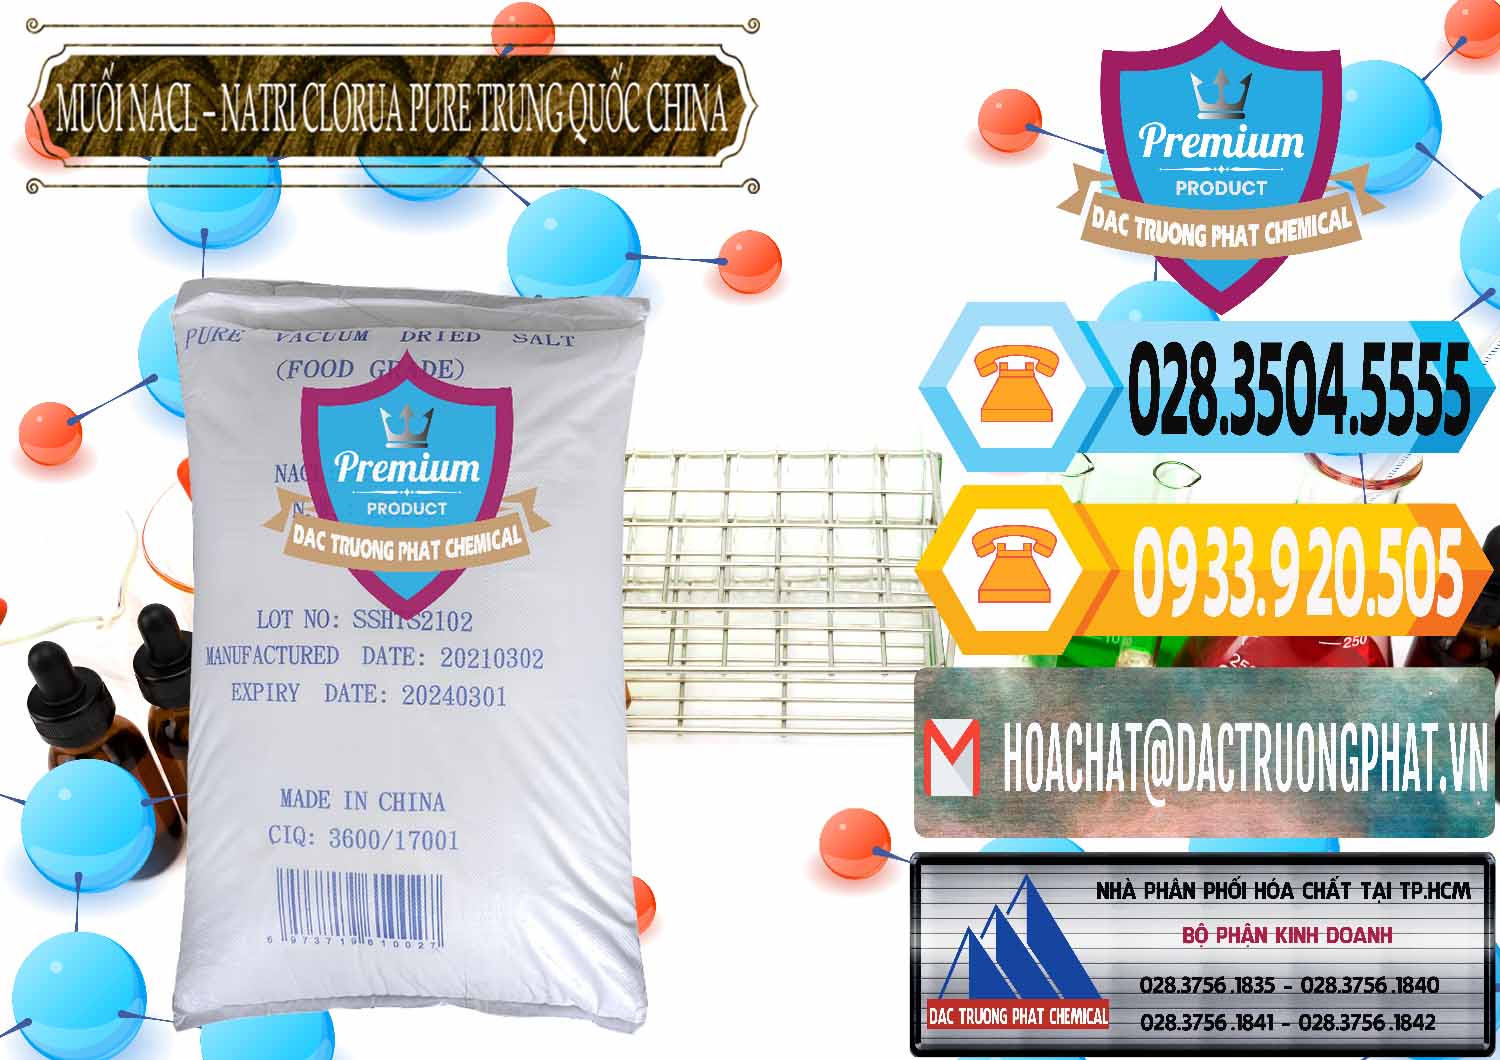 Đơn vị chuyên bán & phân phối Muối NaCL – Sodium Chloride Pure Trung Quốc China - 0230 - Nhà cung cấp - phân phối hóa chất tại TP.HCM - hoachattayrua.net